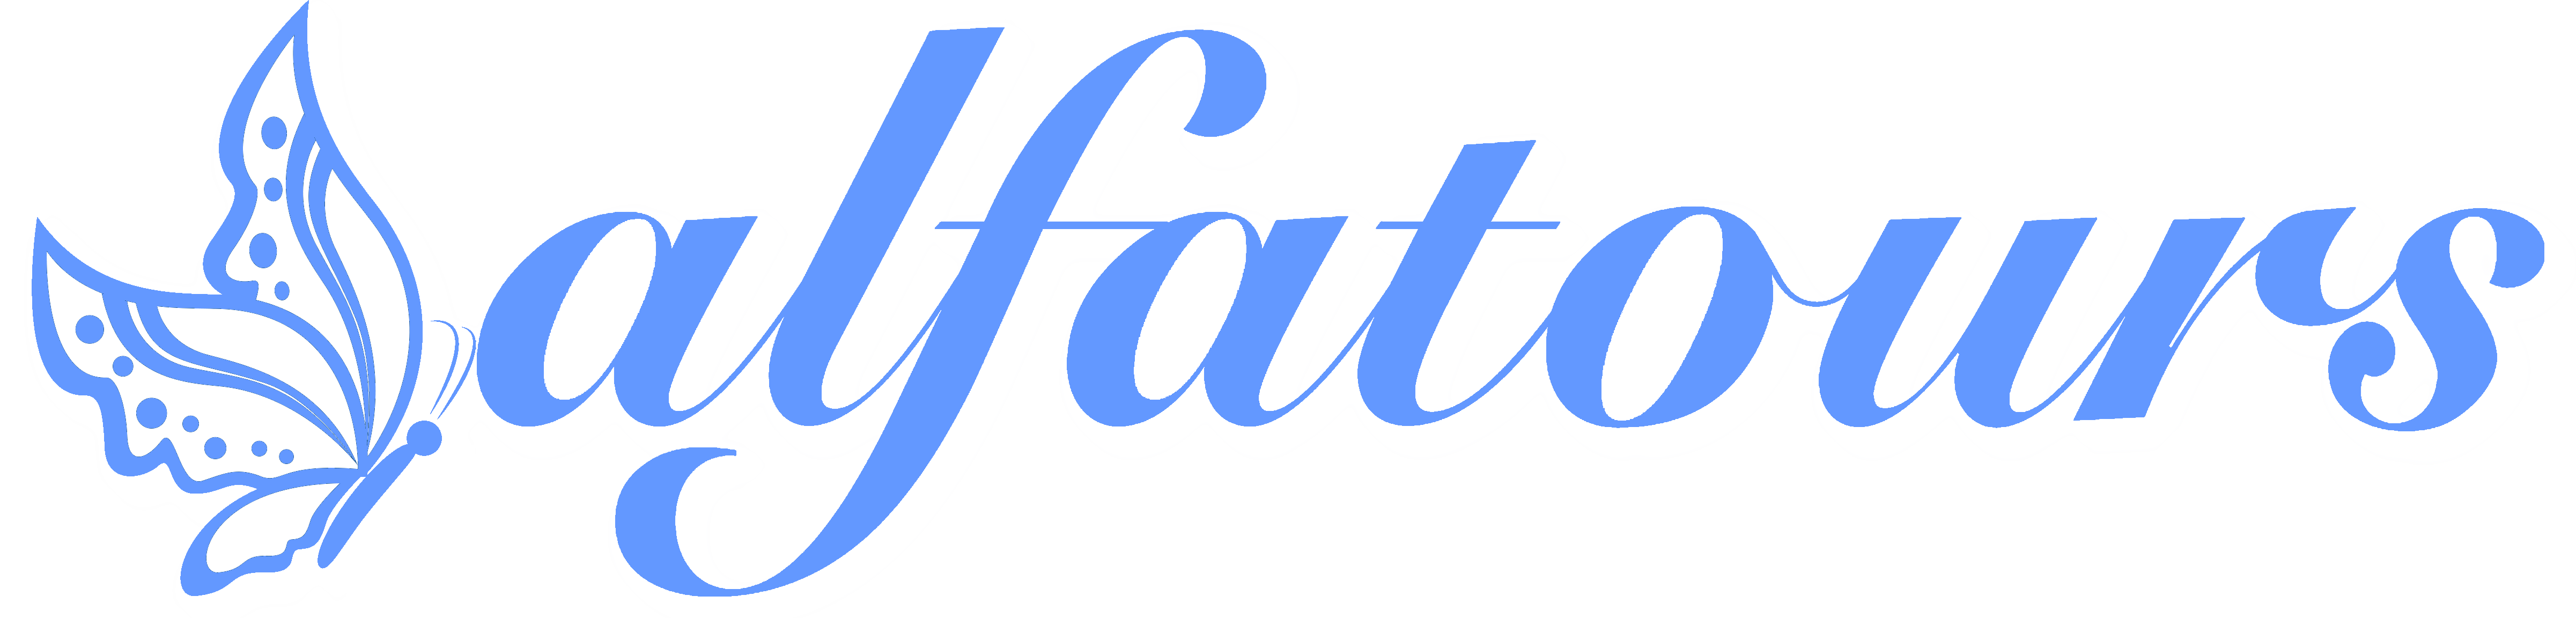 Alfatours-logo